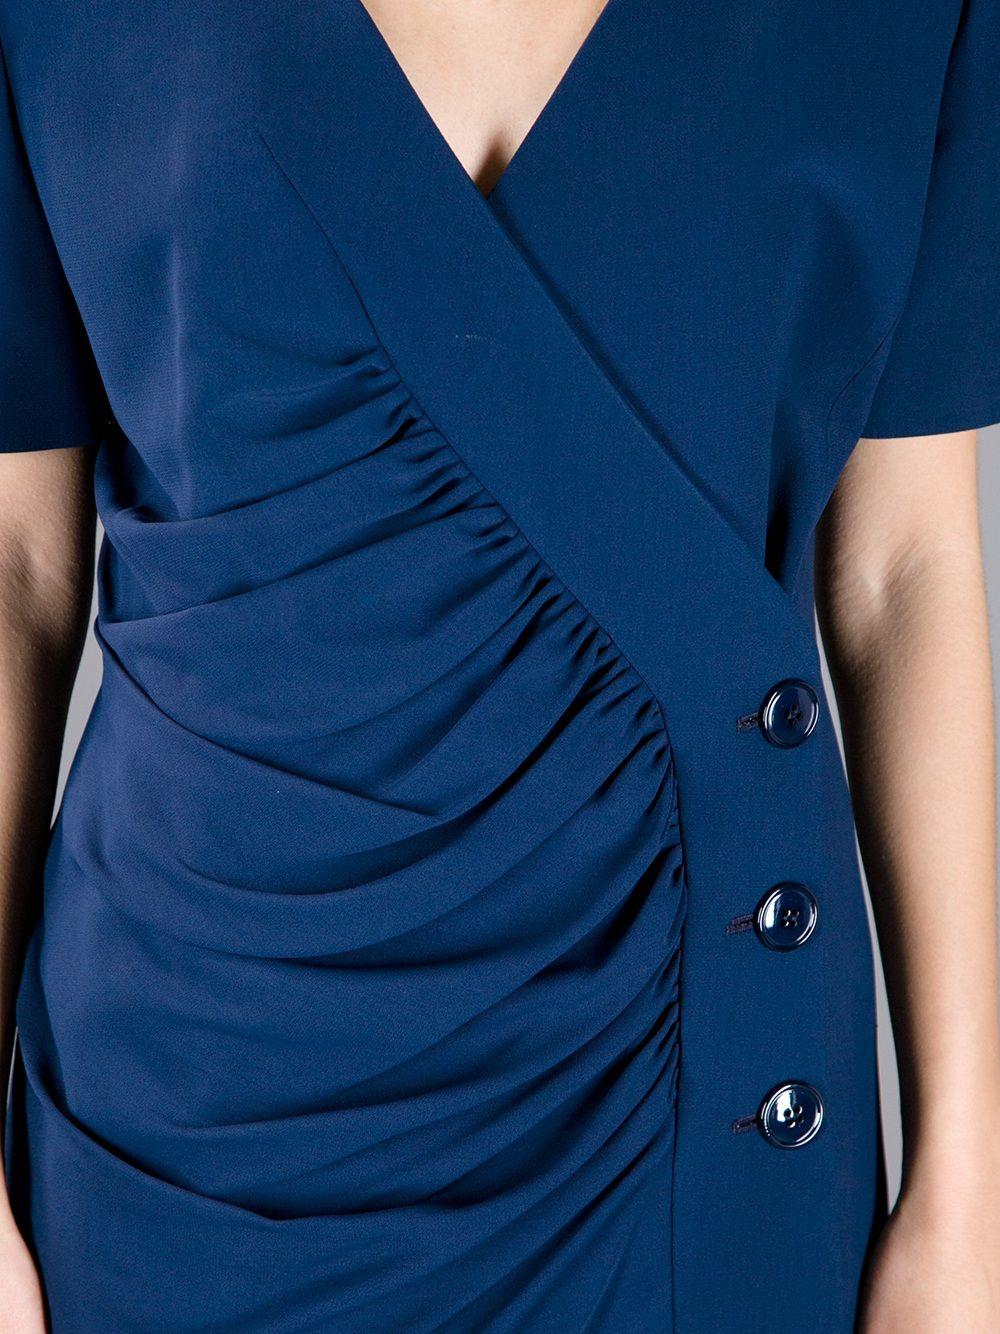 Women's 1990s Gianfranco Ferré Blue Skirt Suit